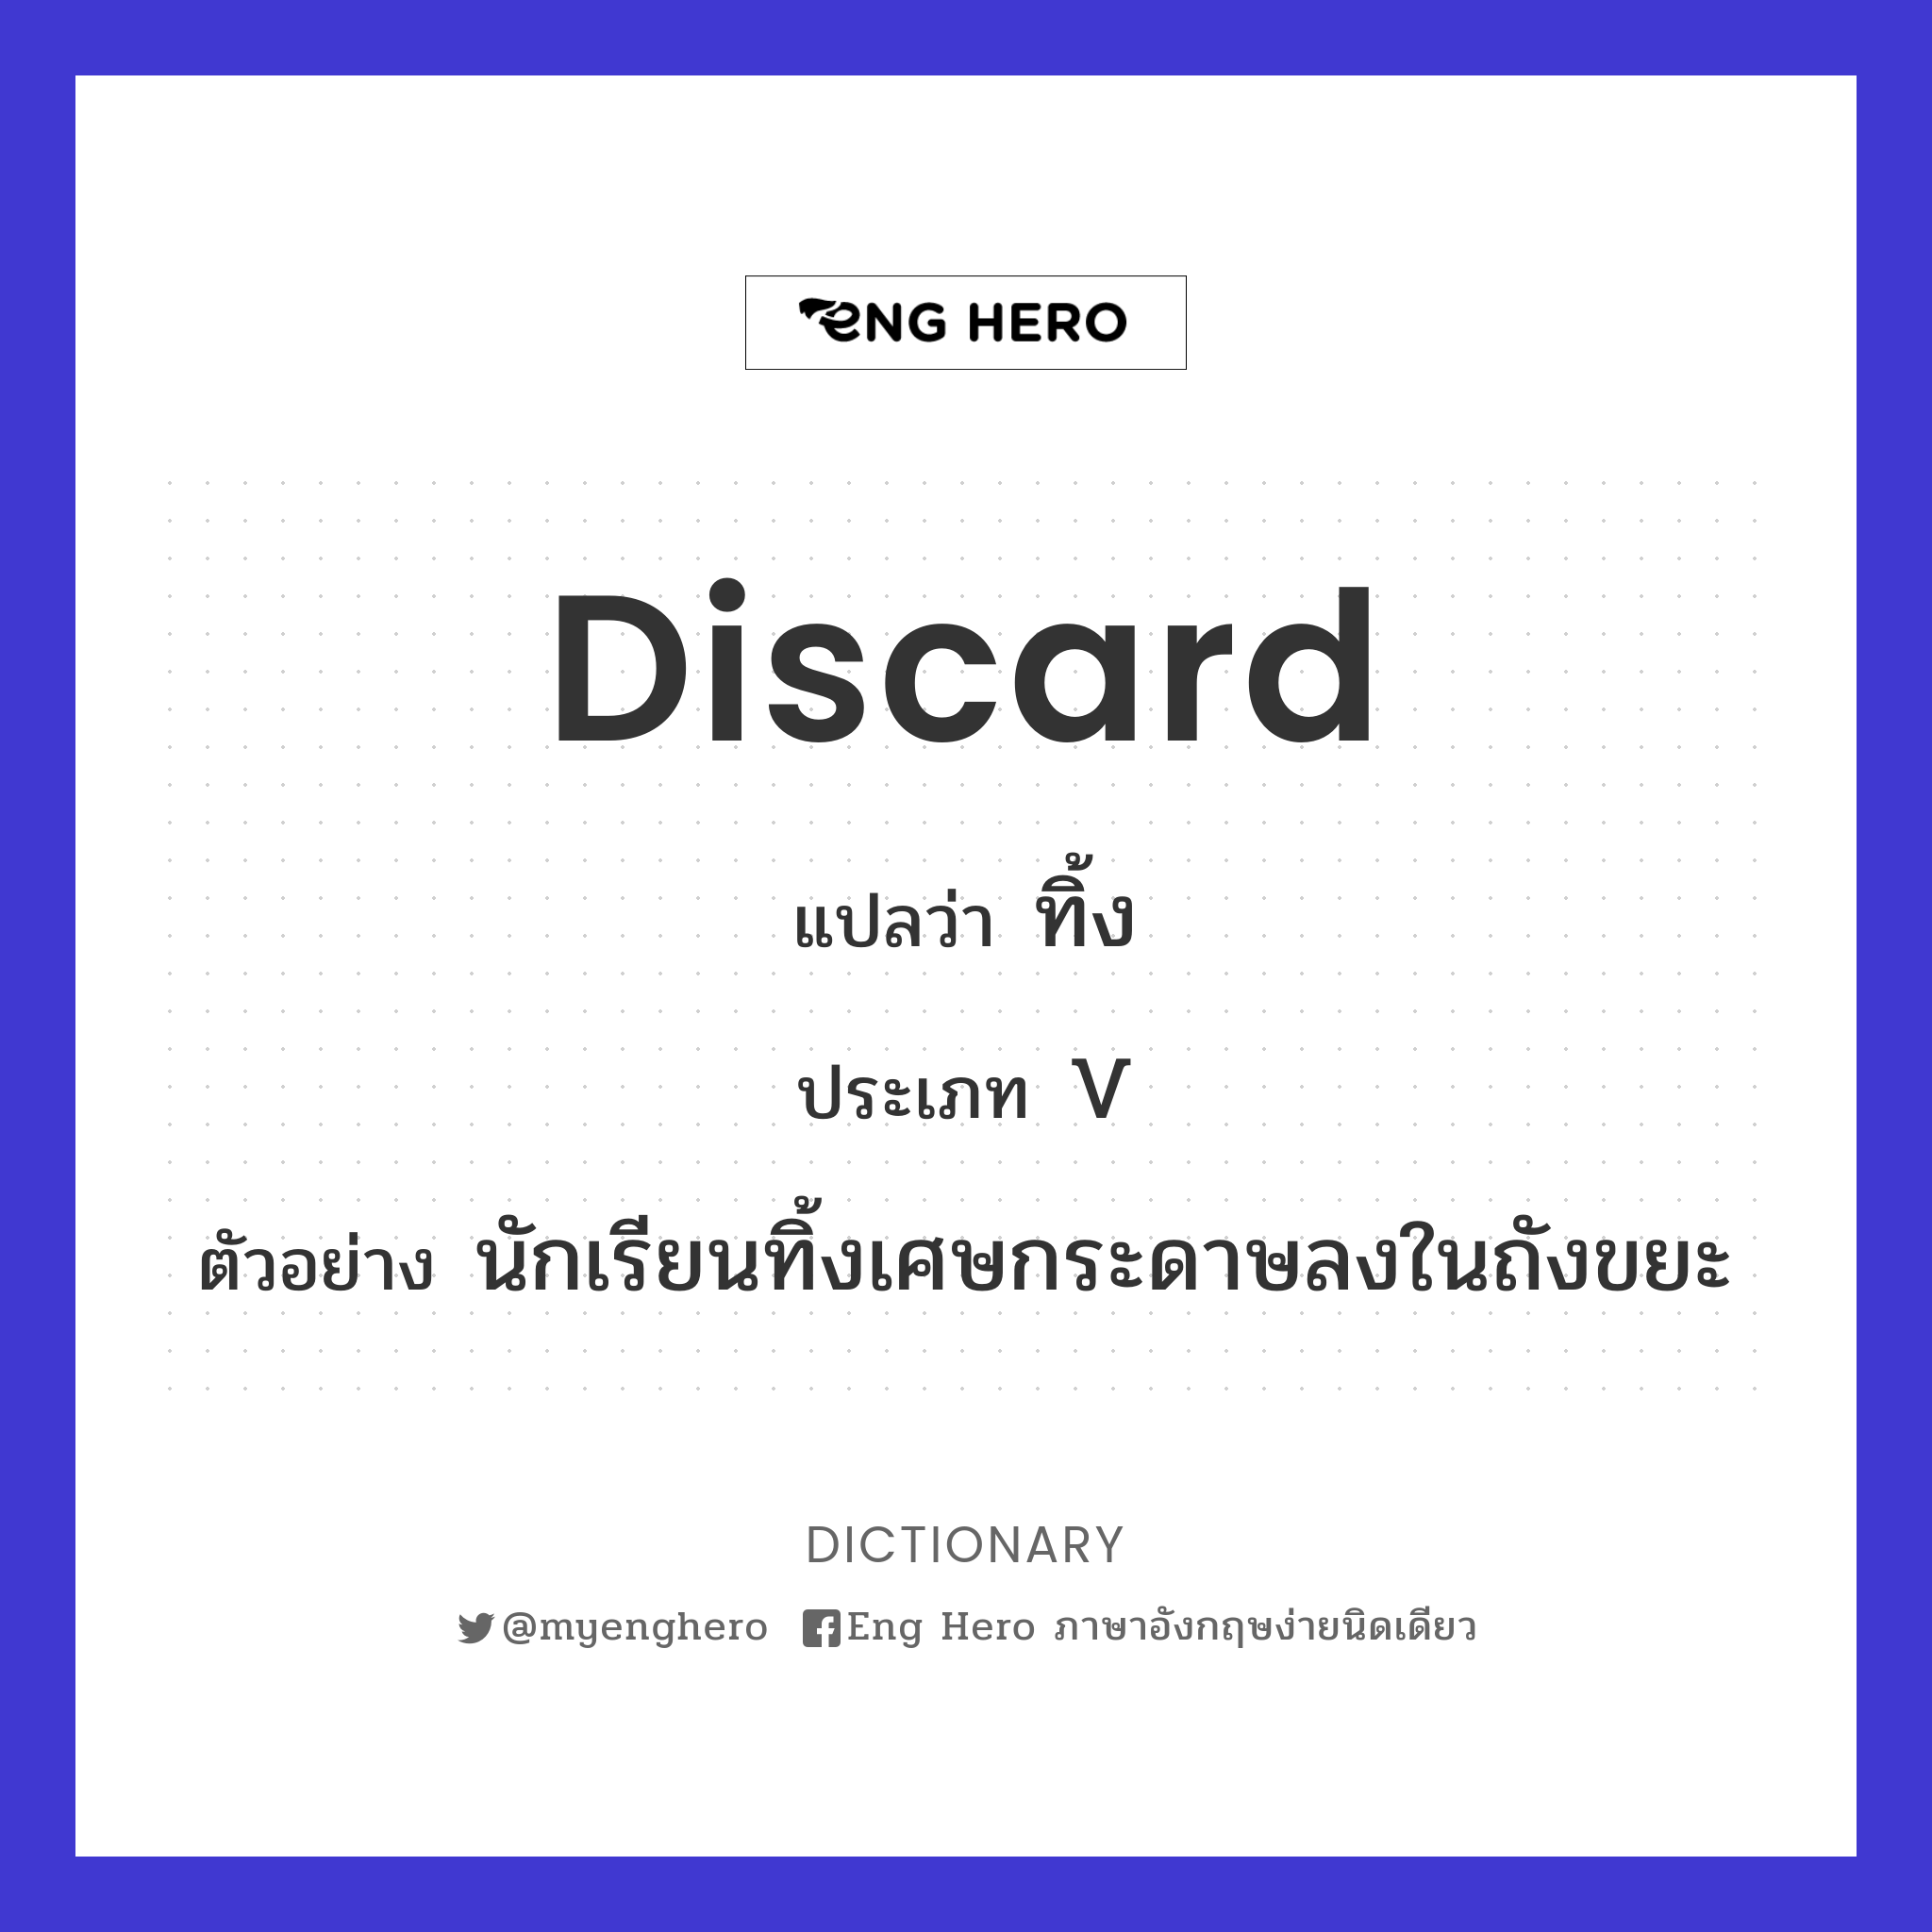 discard